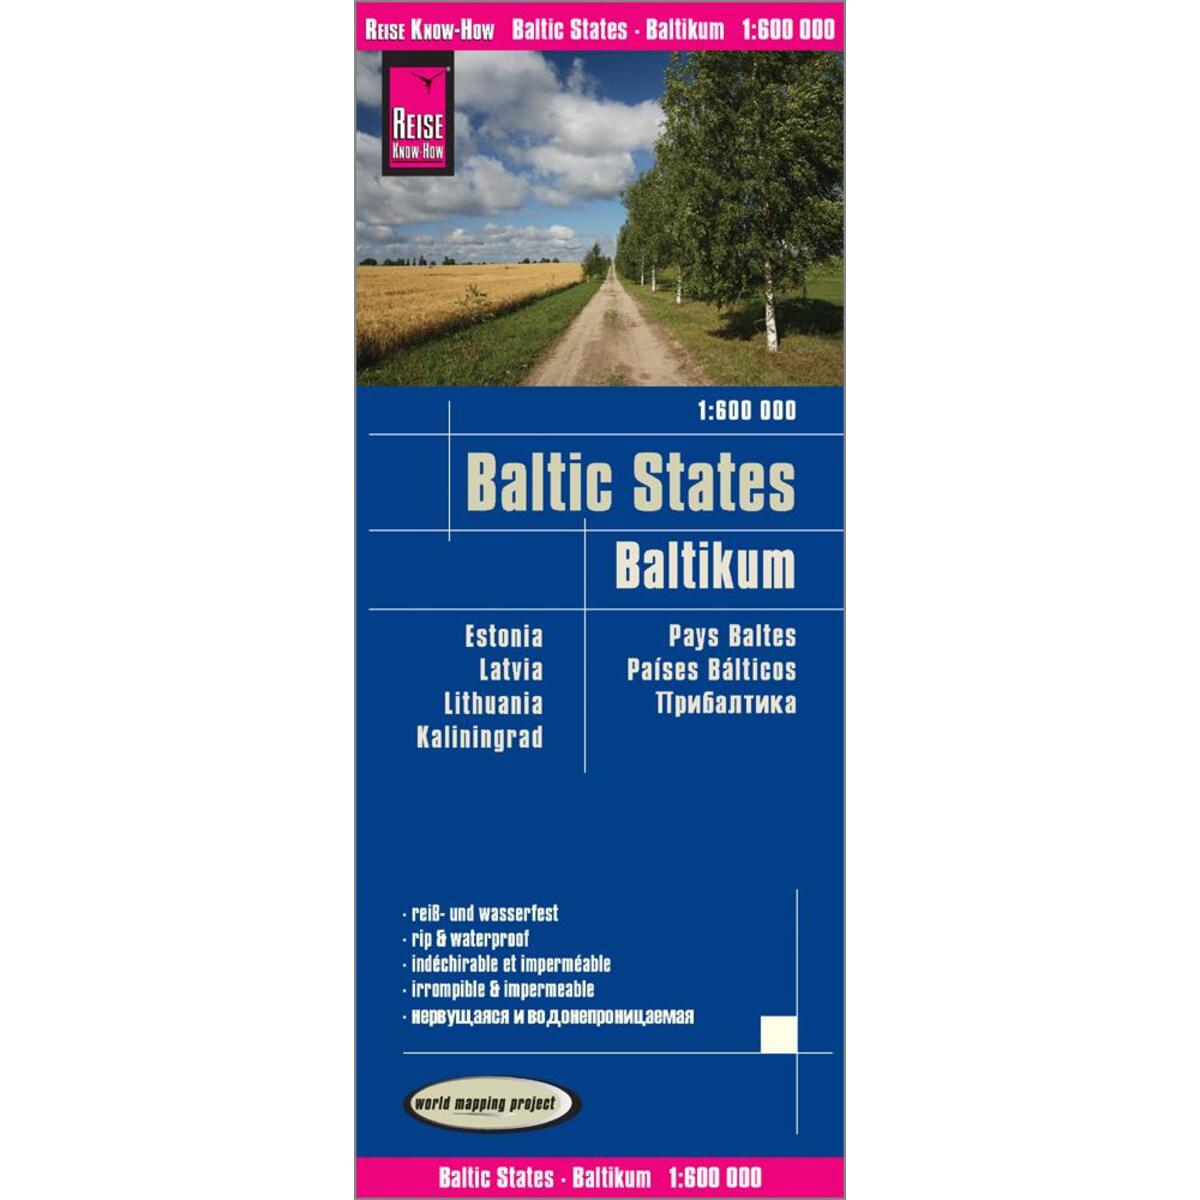 Reise Know-How Landkarte Baltikum / Baltic States (1:600.000) : Estland, Lettlan... von Reise Know-How Rump GmbH